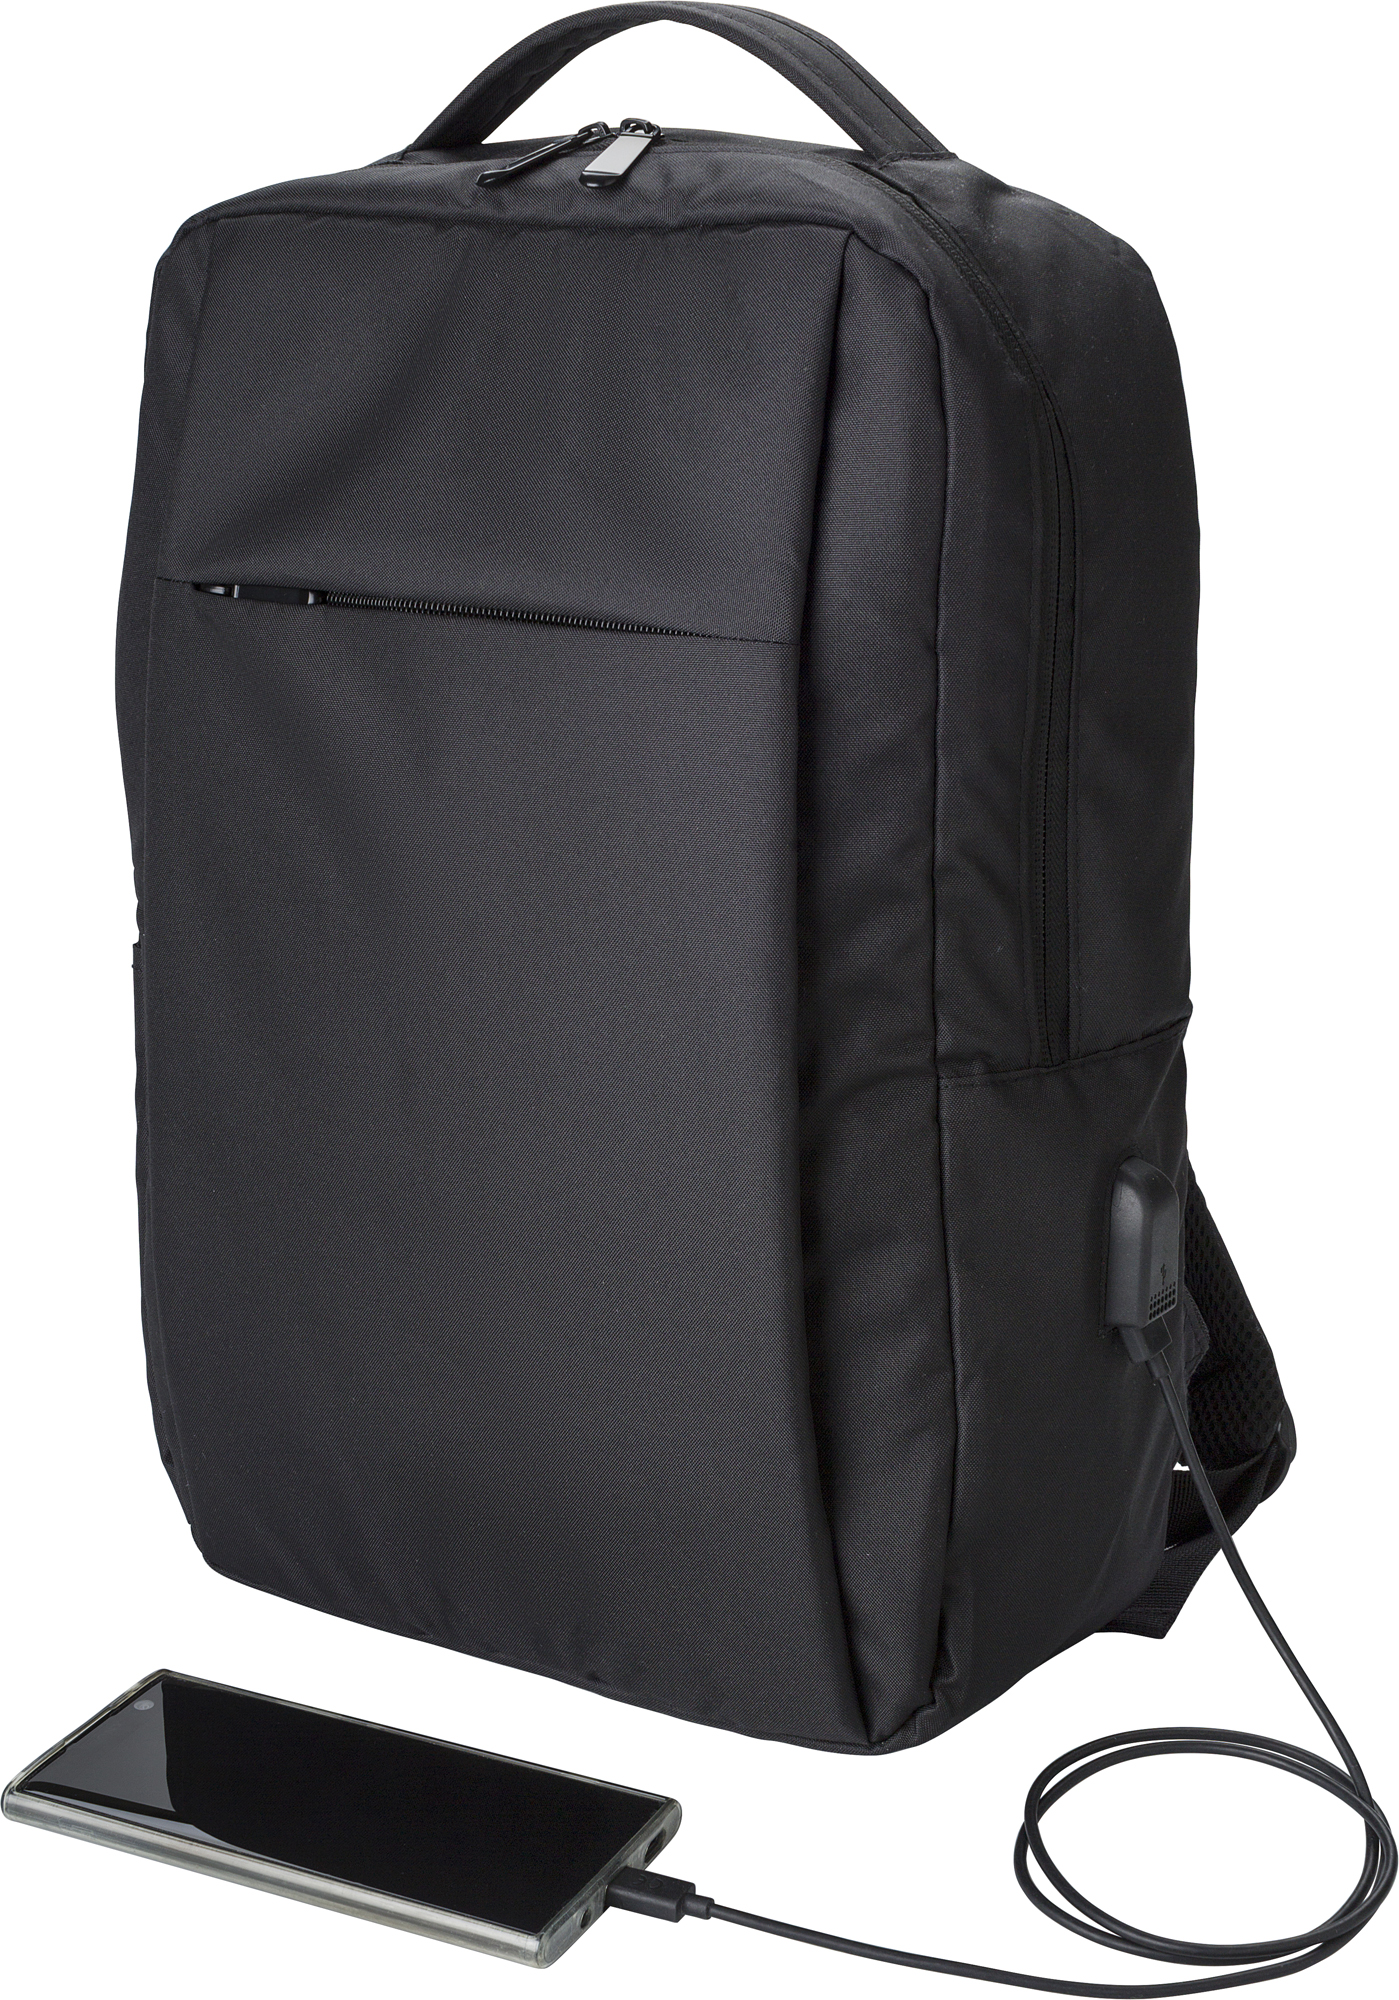 000000967399 001999999 3d045 rgt pro01 2023 fal - RPET laptop backpack